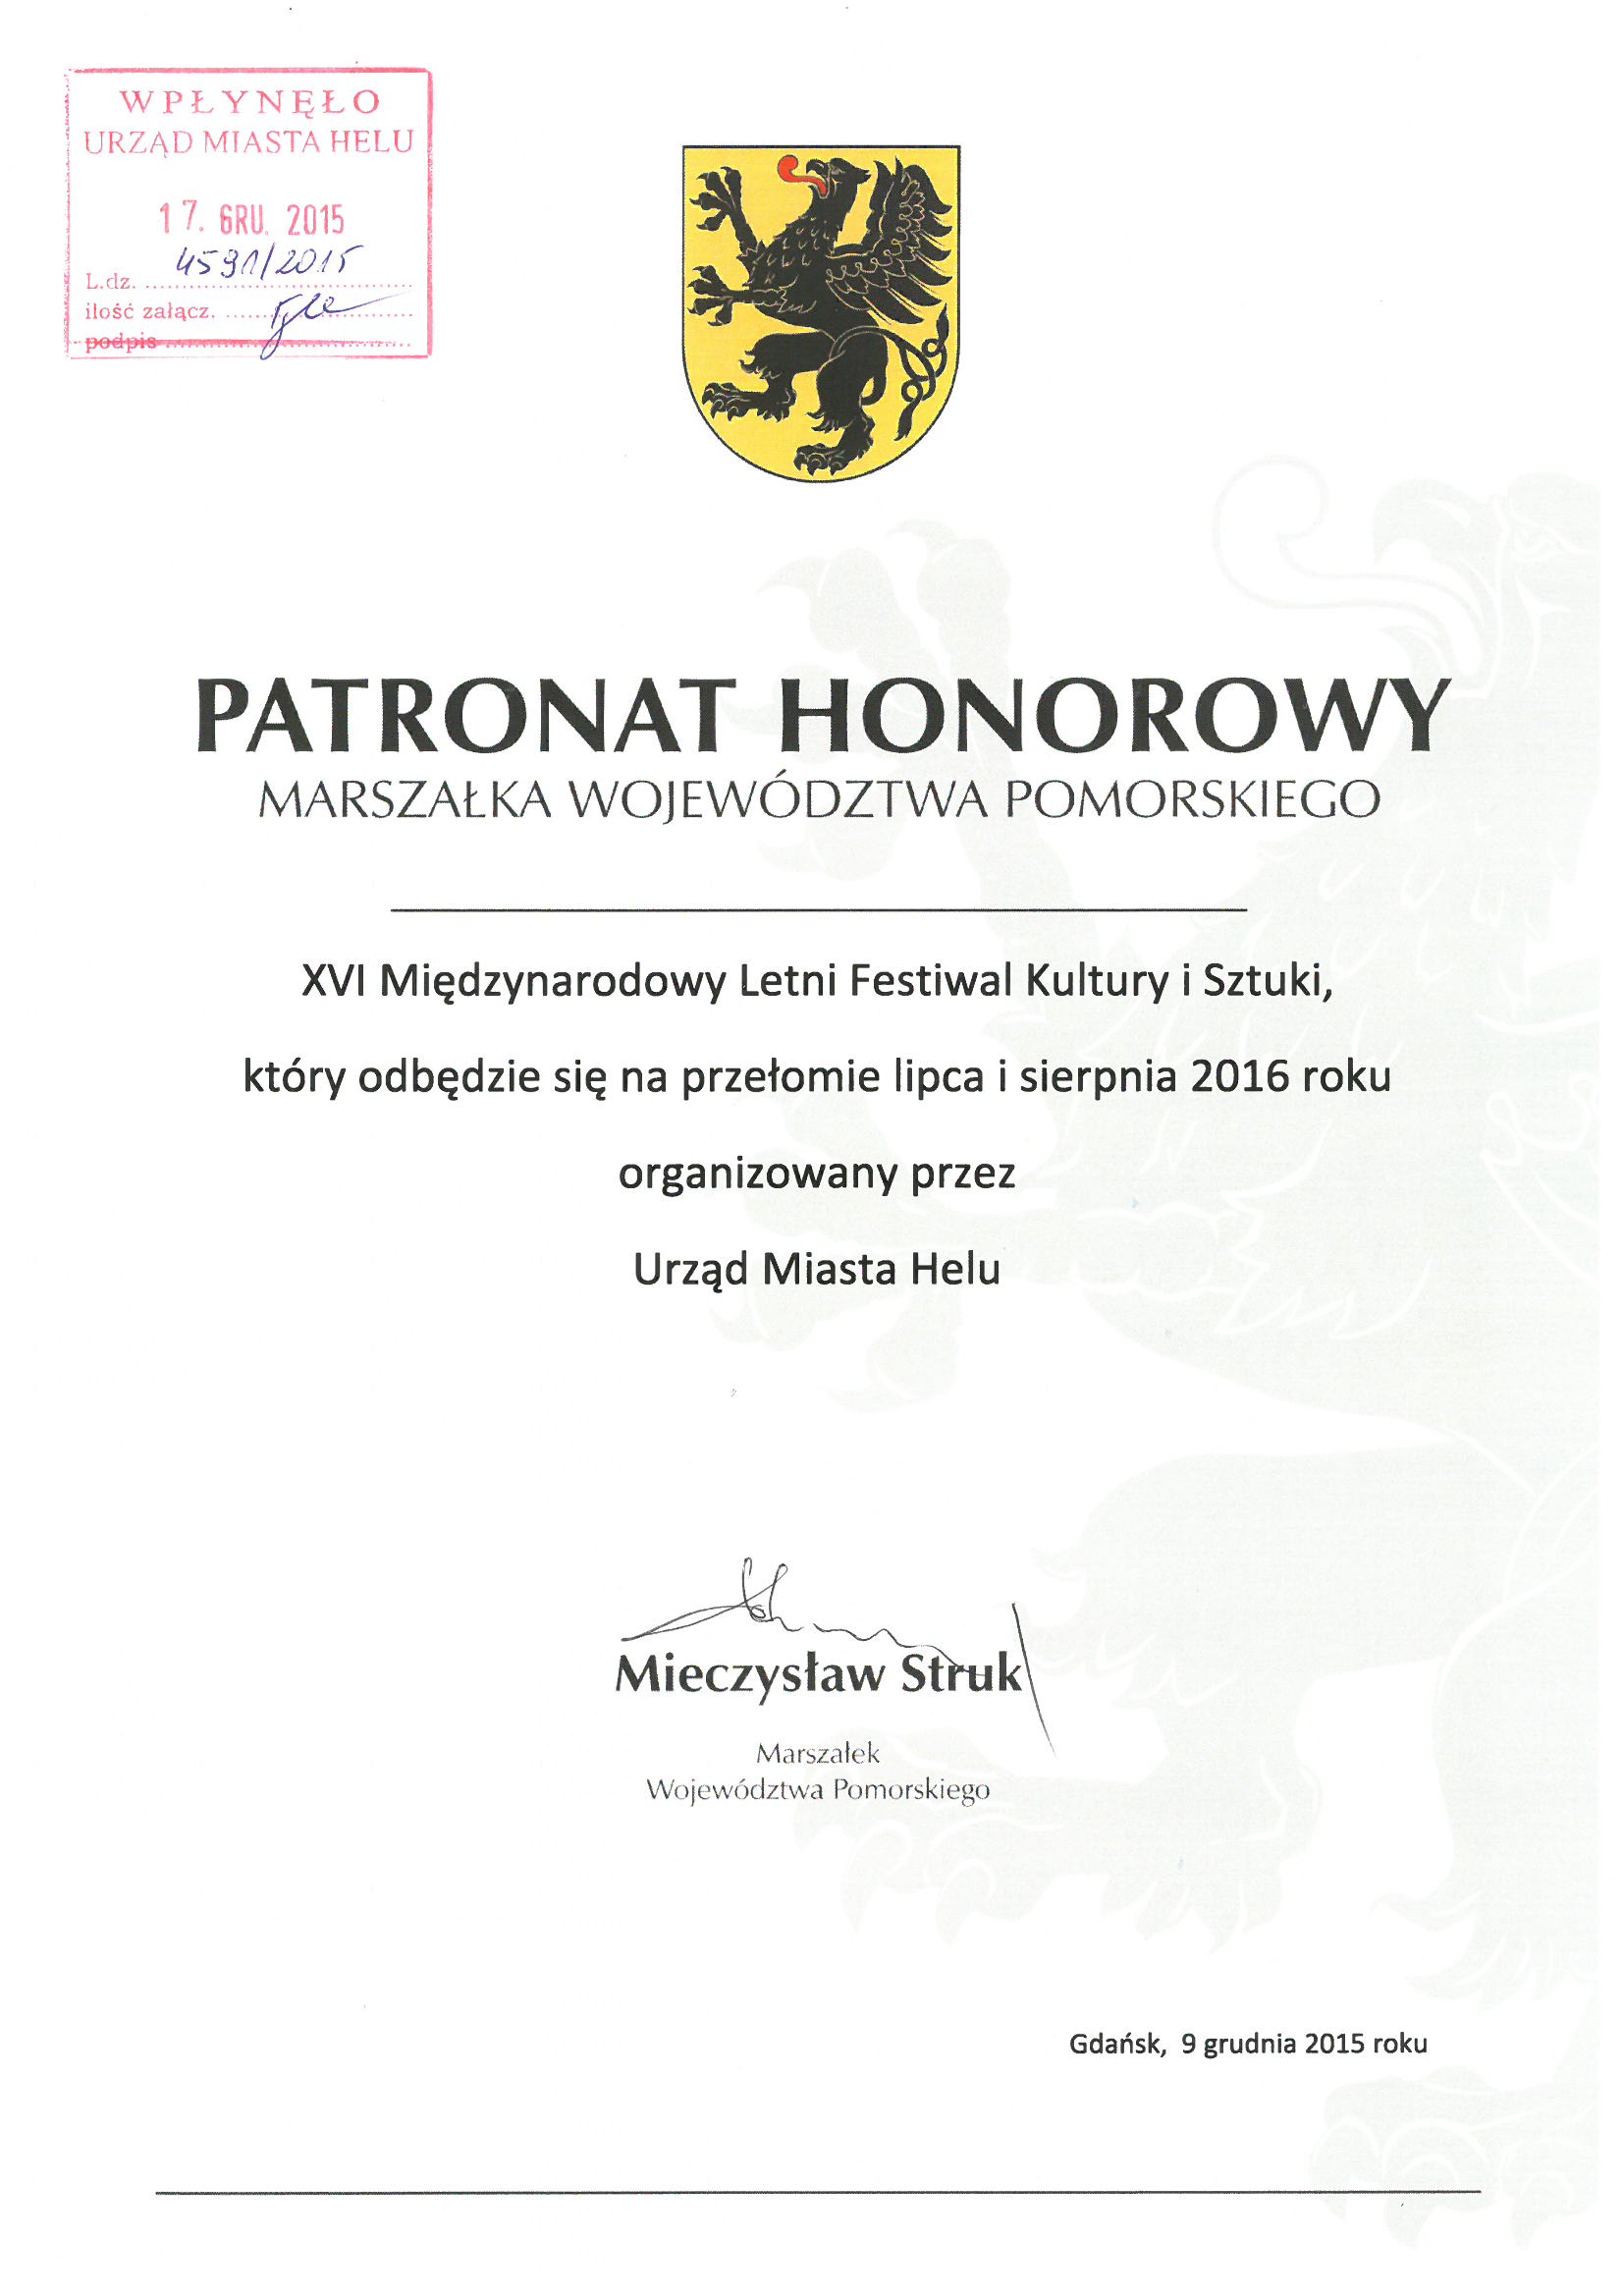 Obraz przedstawia pismo w sprawie objęcia patronatu honorowego Marszałka Województwa Pomorskiego